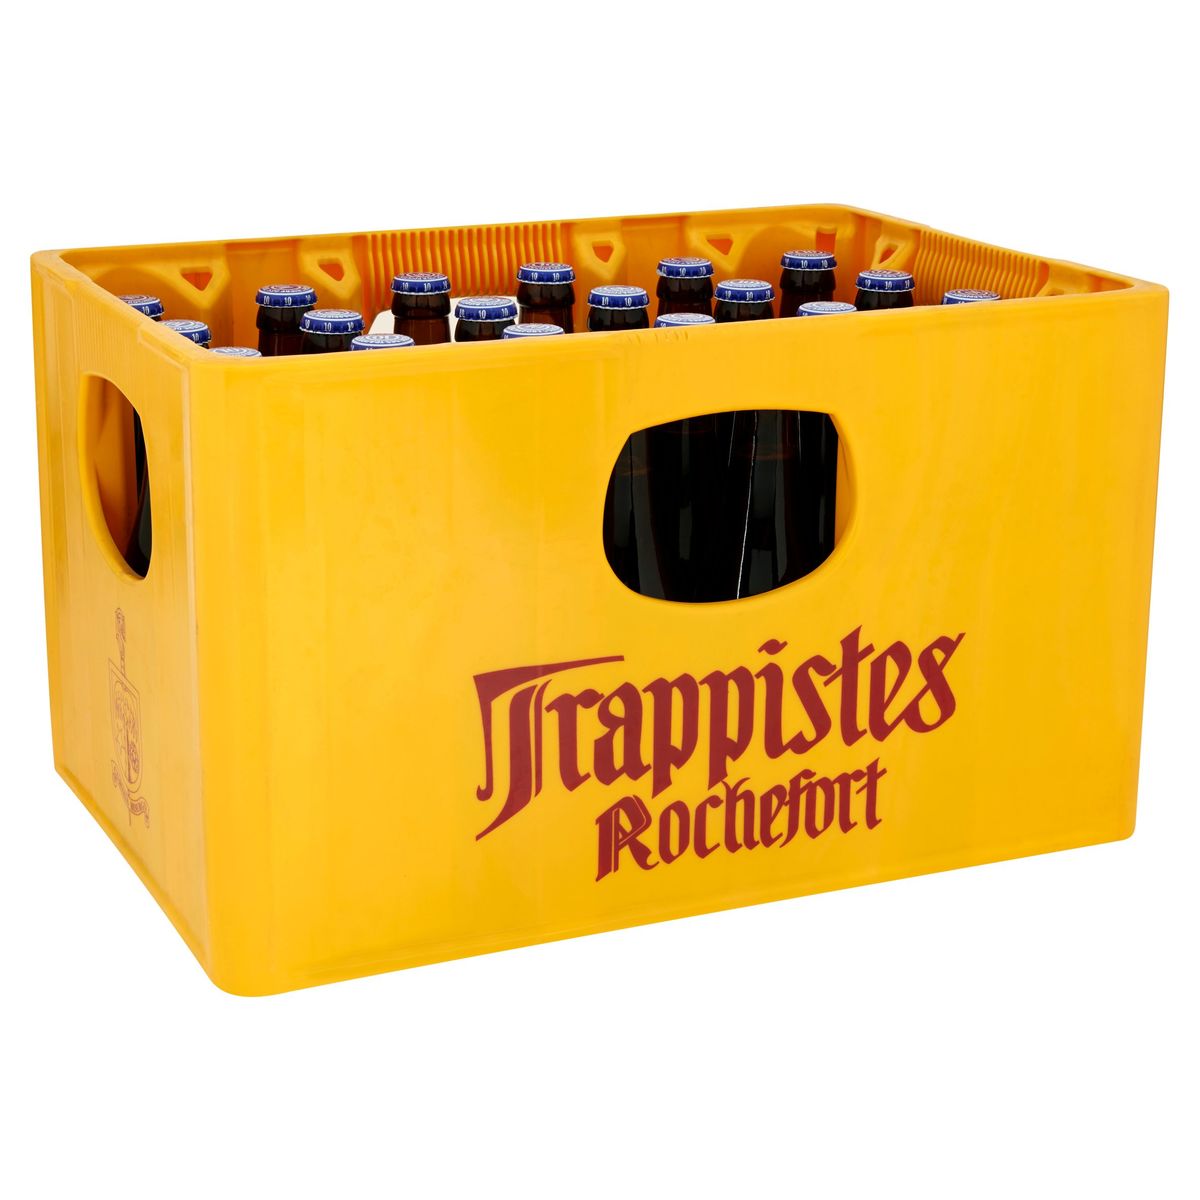 Trappistes Rochefort 10 Bière 24 x 33 cl